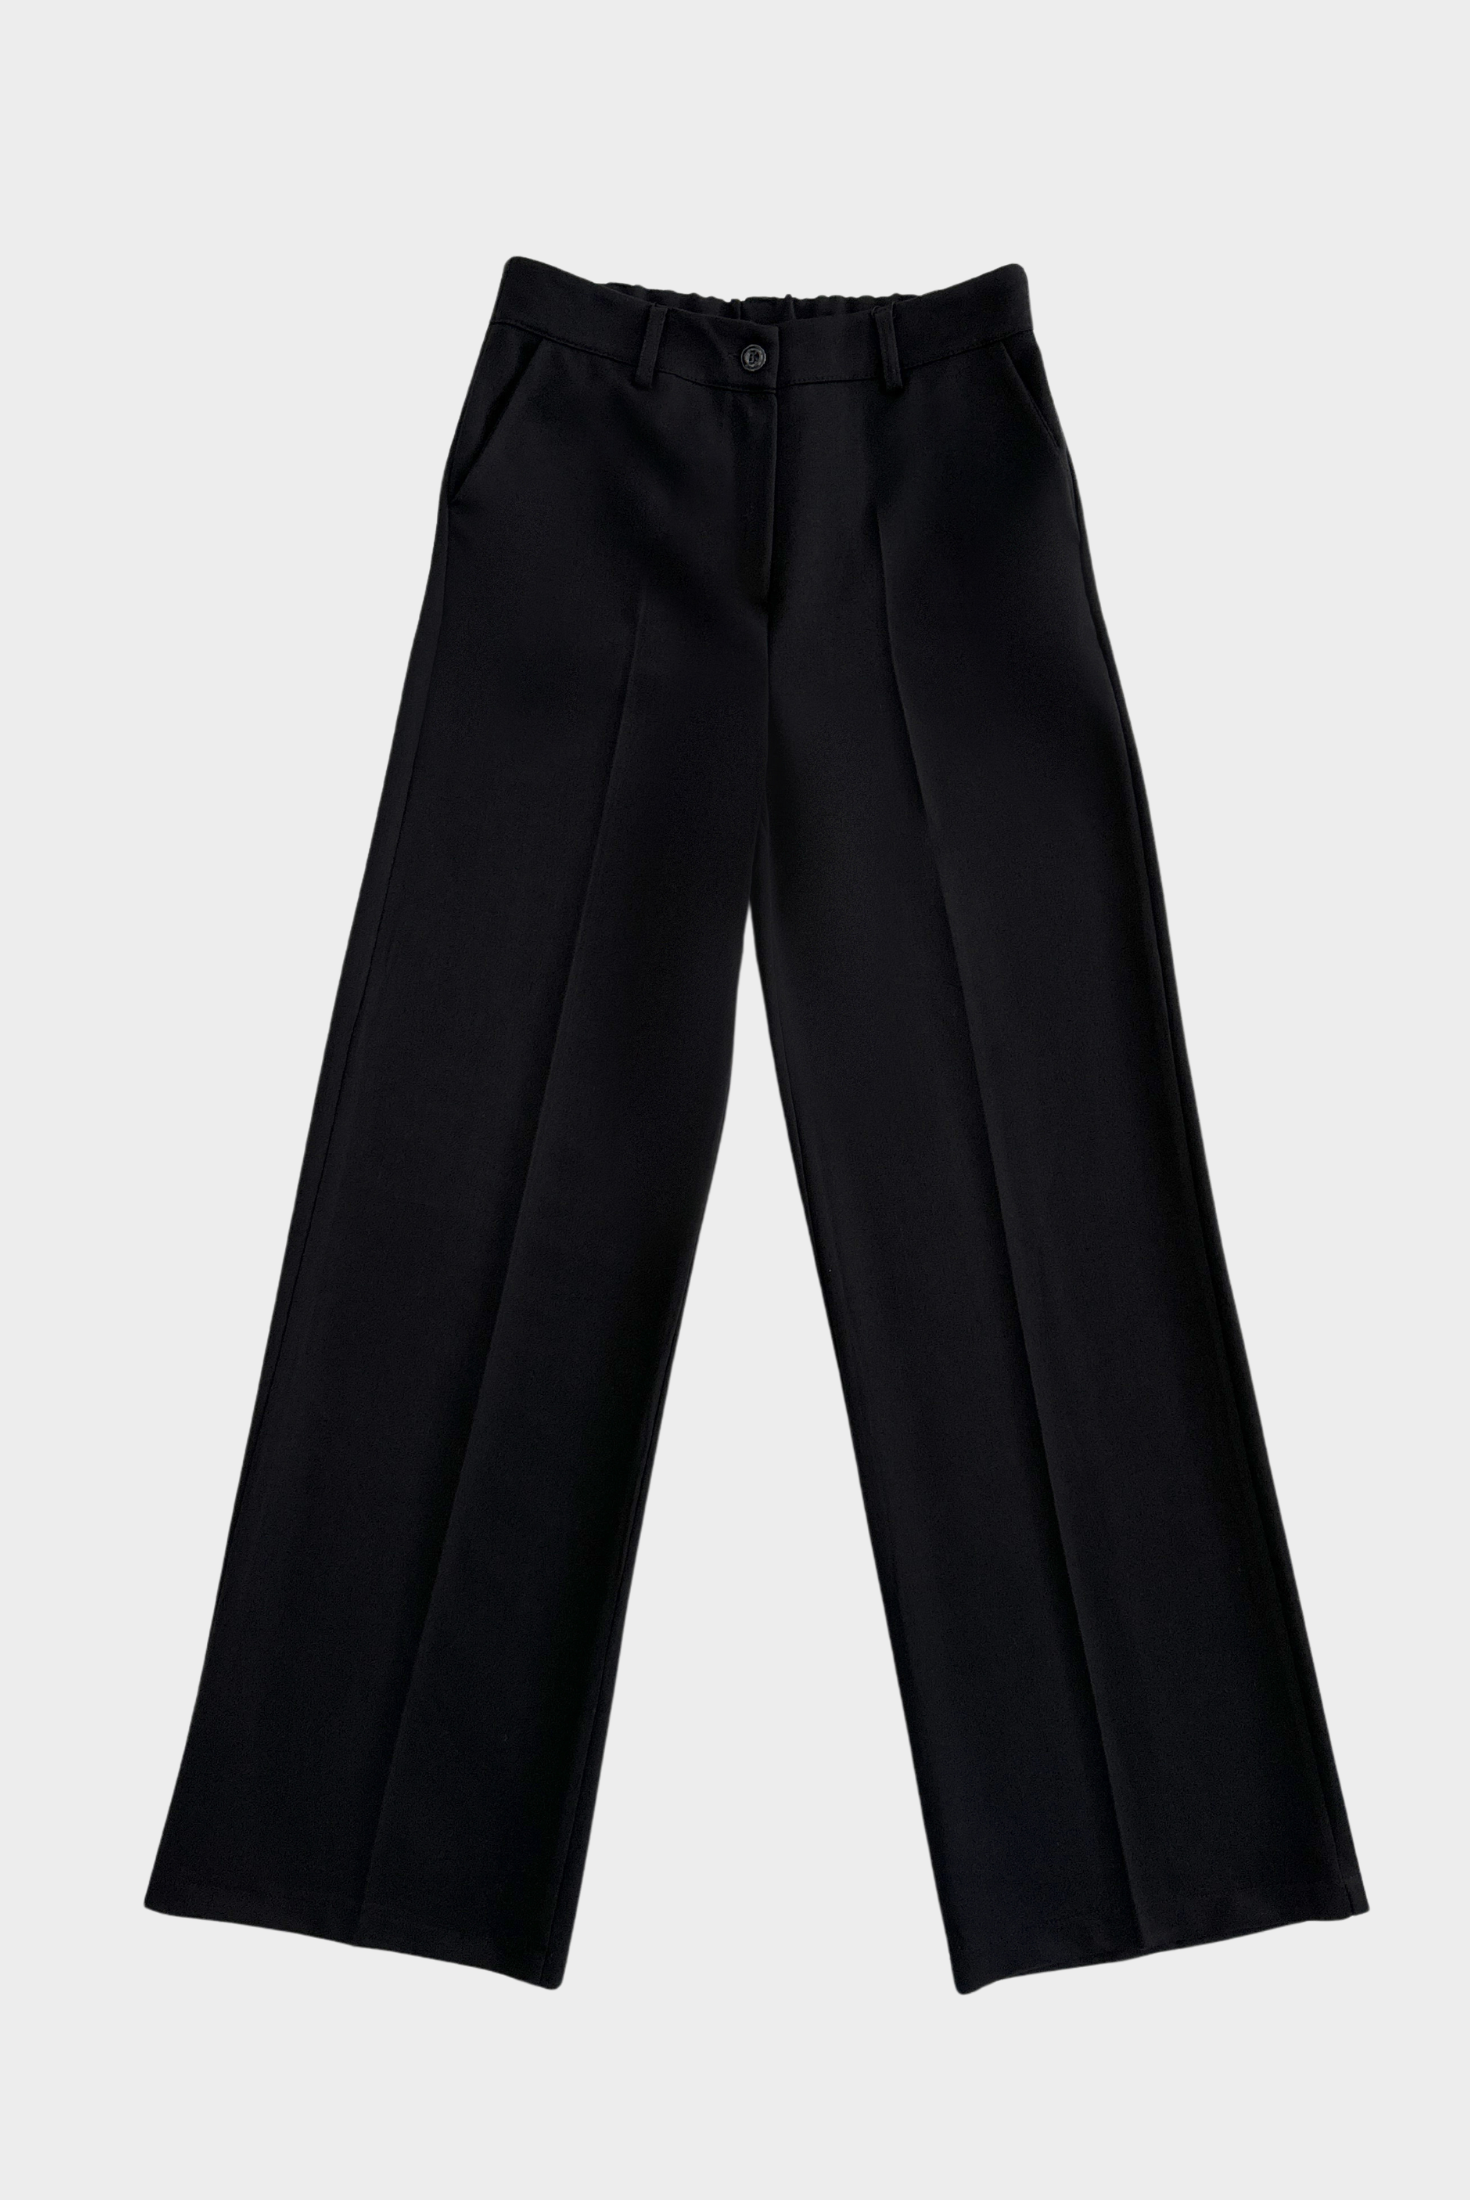 מכנס מחויט בגזרה גבוהה בצבע שחור